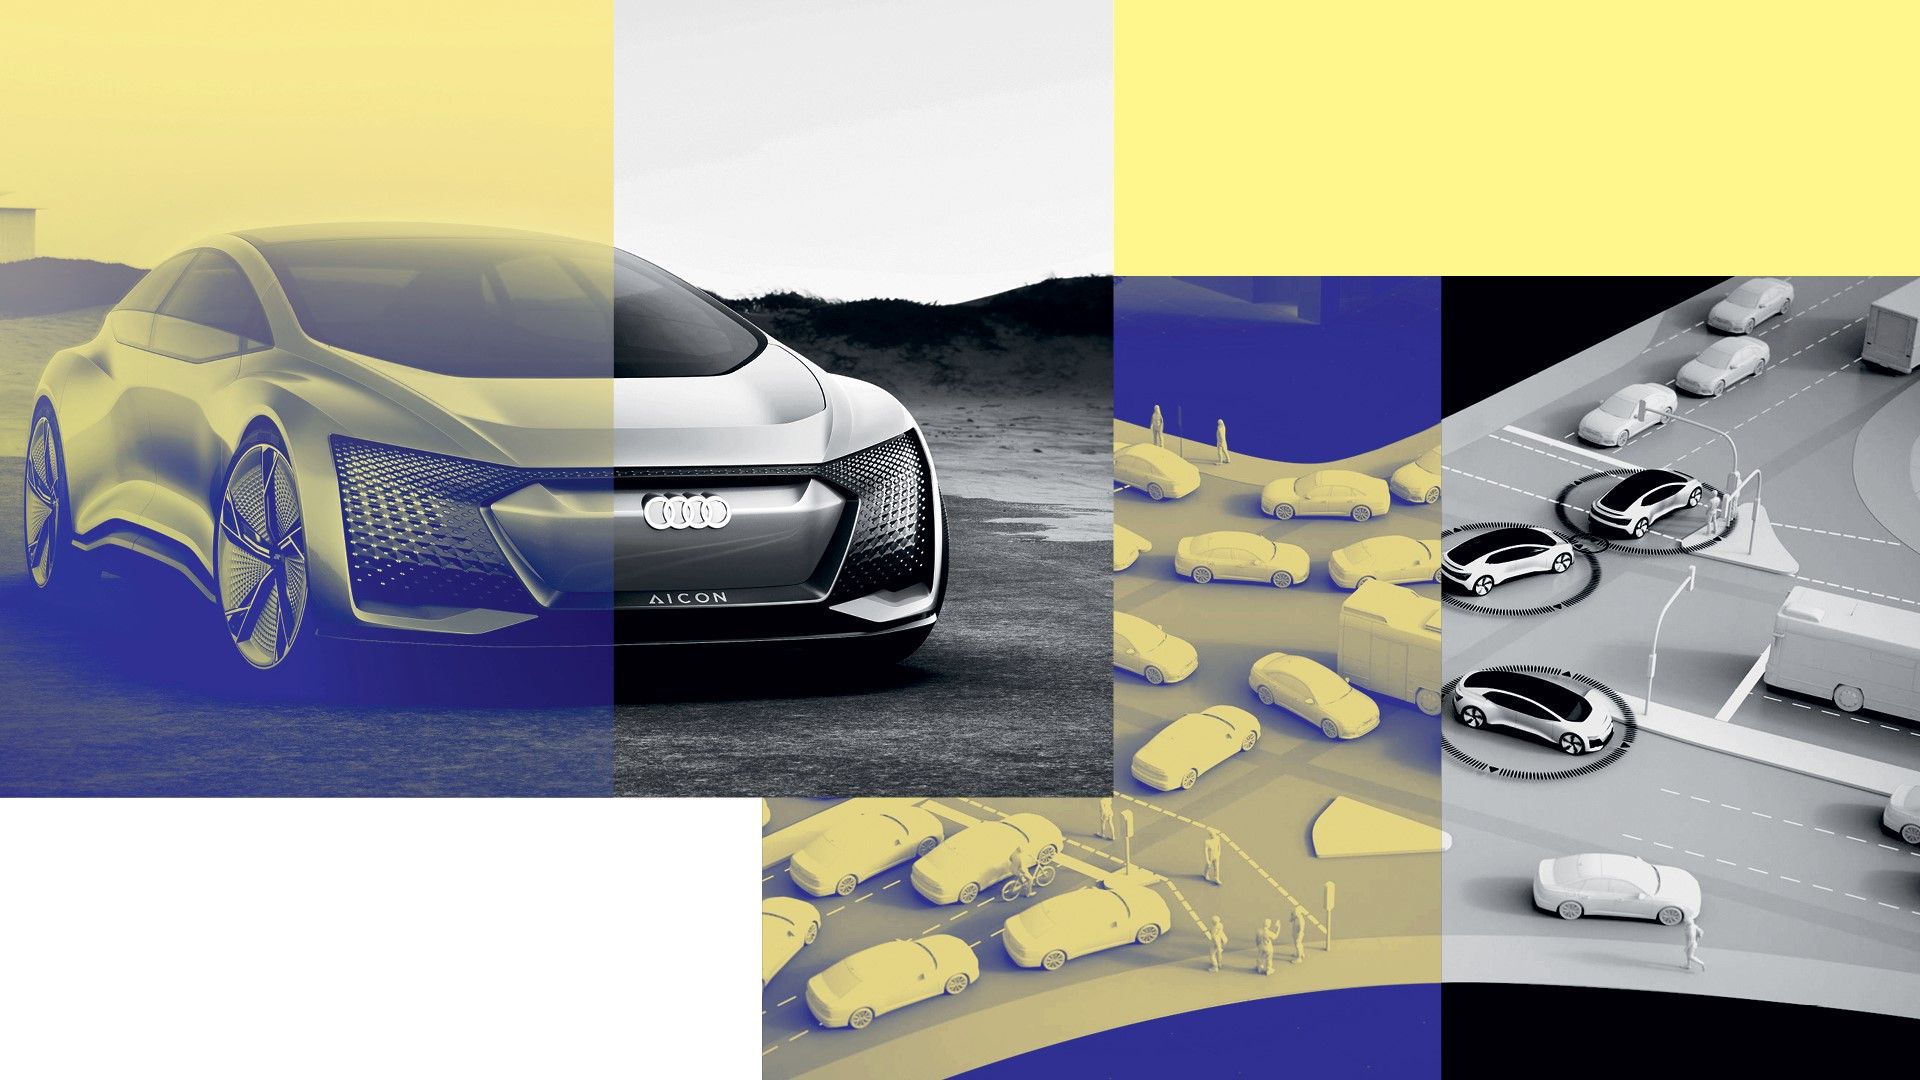 Um den Verkehr spürbar zu entlasten, müssen mindestens 40 Prozent der Autos autonom fahren – so wie das Concept Car Audi Aicon.